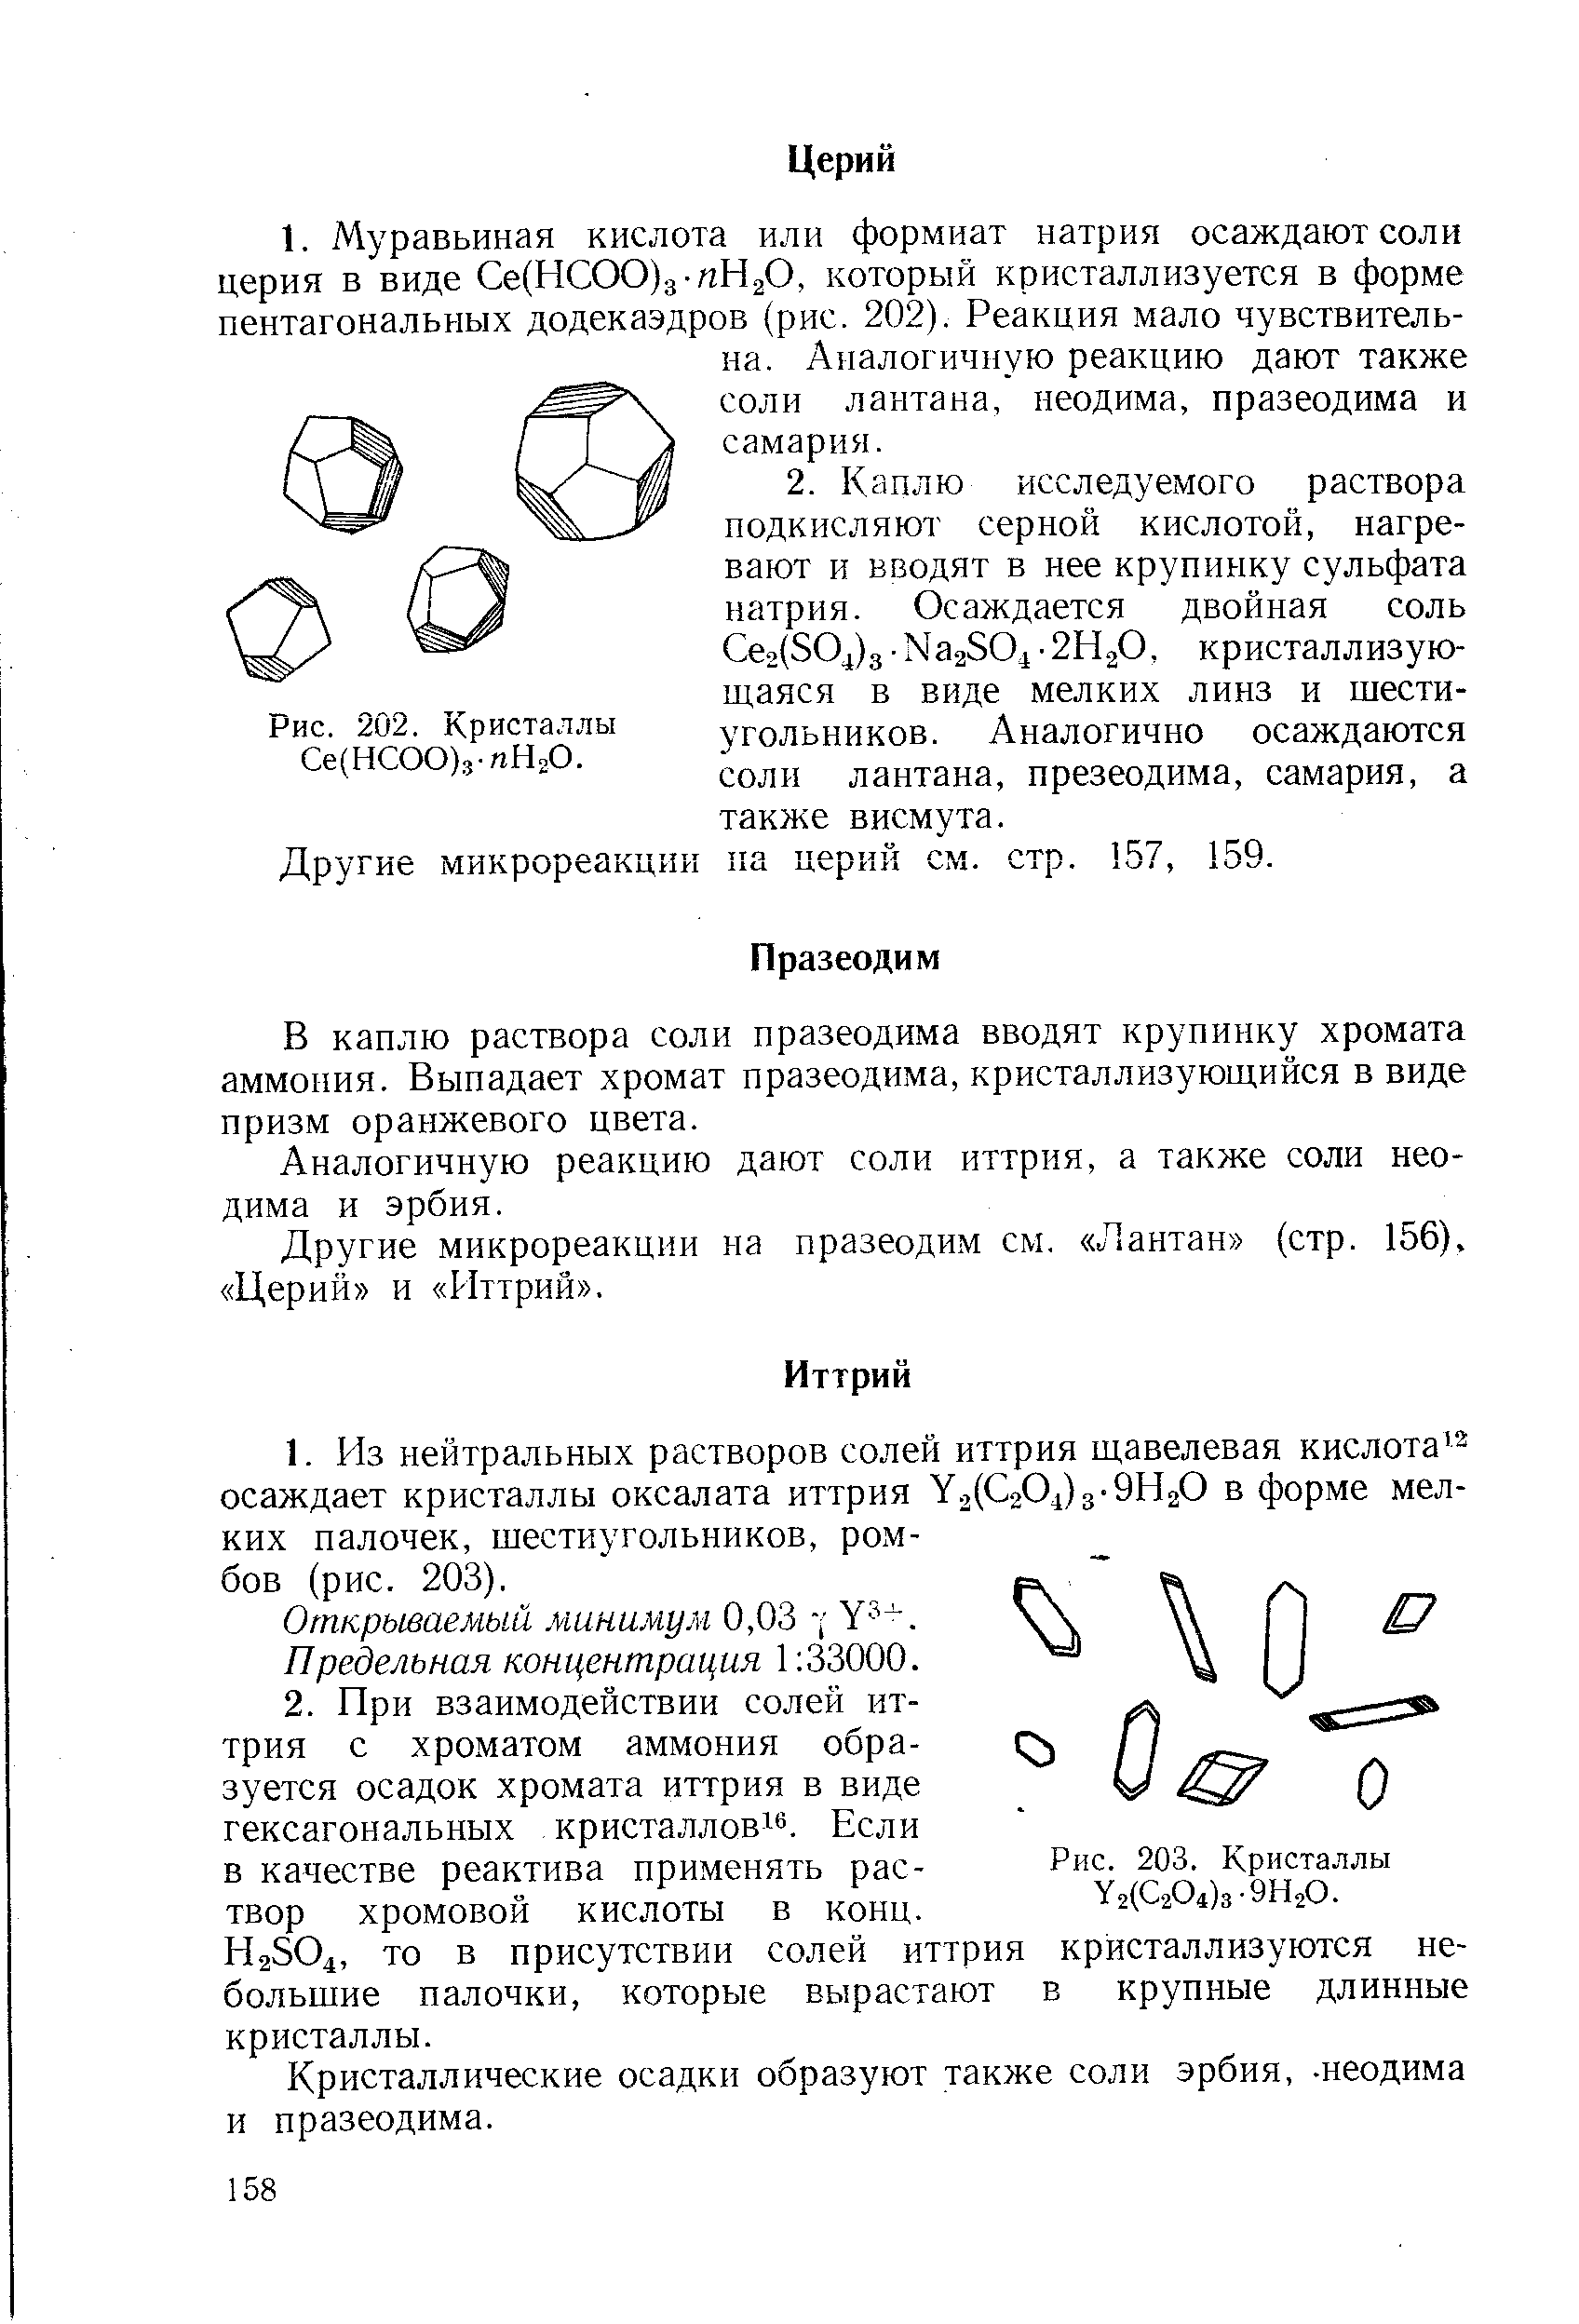 Другие микрореакции на церий см. стр. 57, 159.